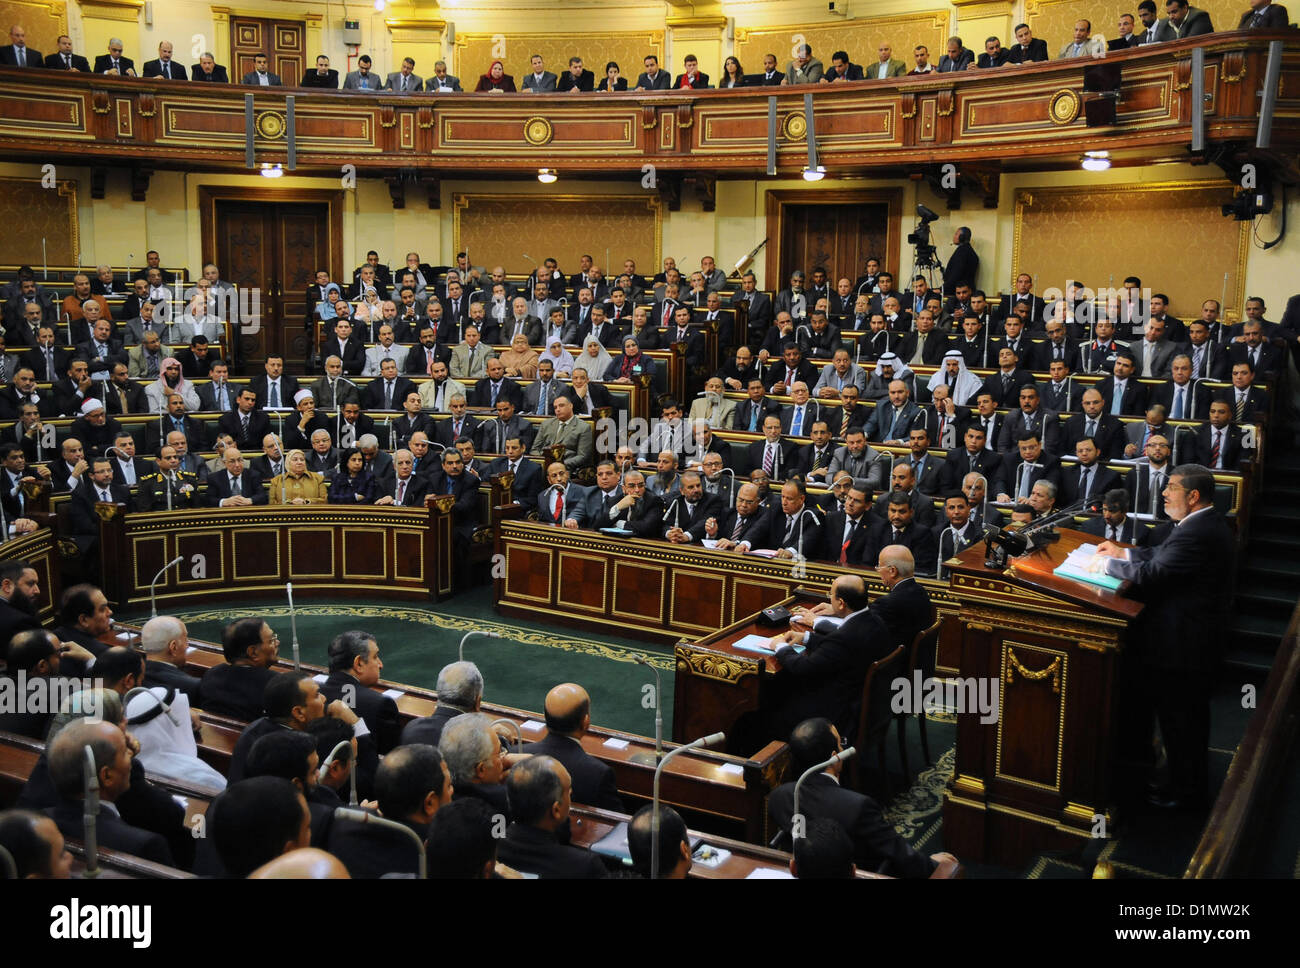 Партия представлена в парламенте страны. Политическая партия Египта. Парламент в Египте палаты. Законодательная власть Египта. Народное собрание Египта.